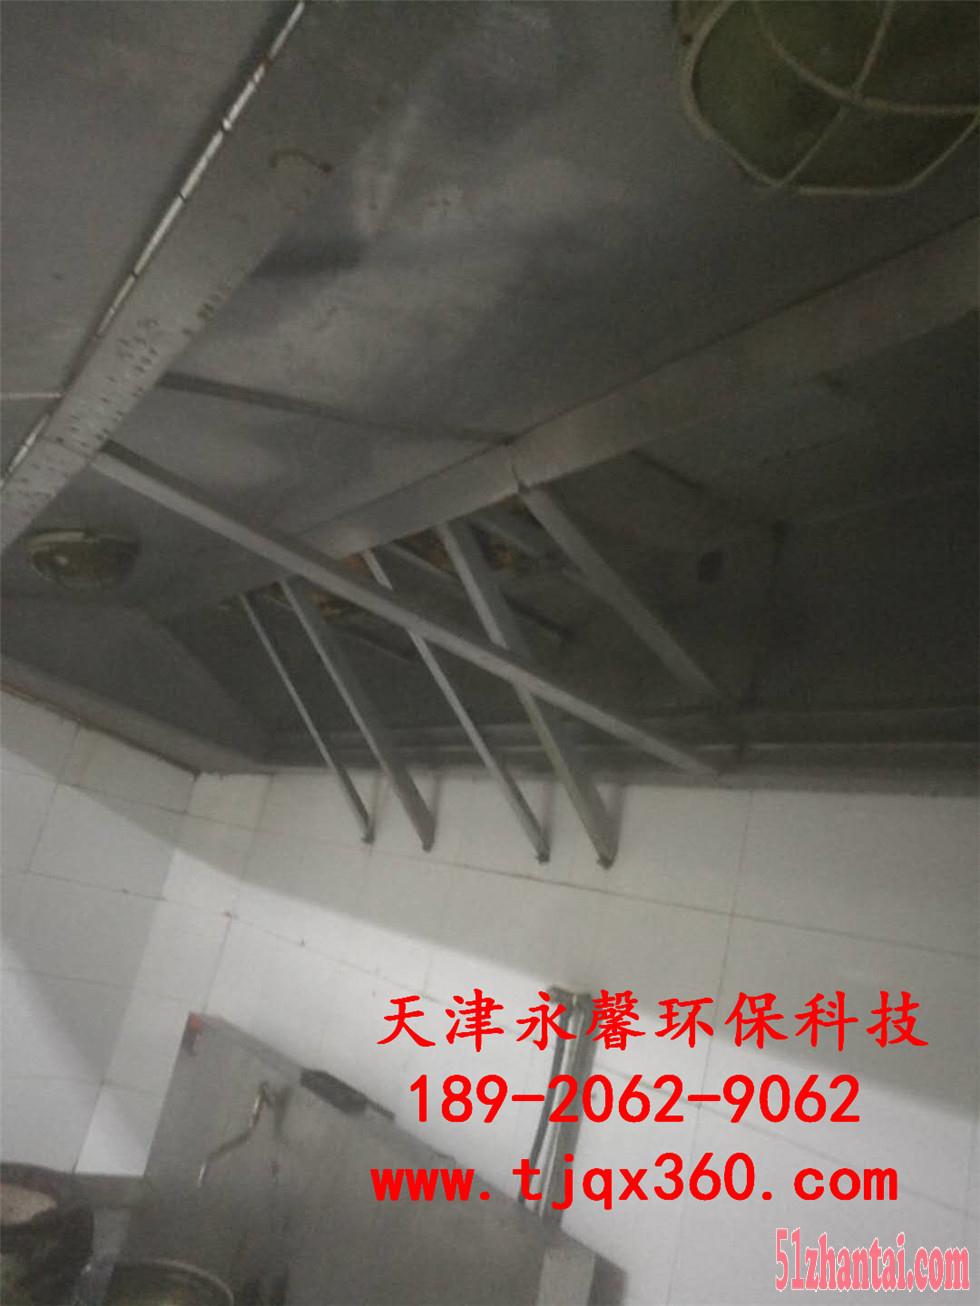 天津和平区油烟管道清洗电话 和平区厨房设备清洗-图2